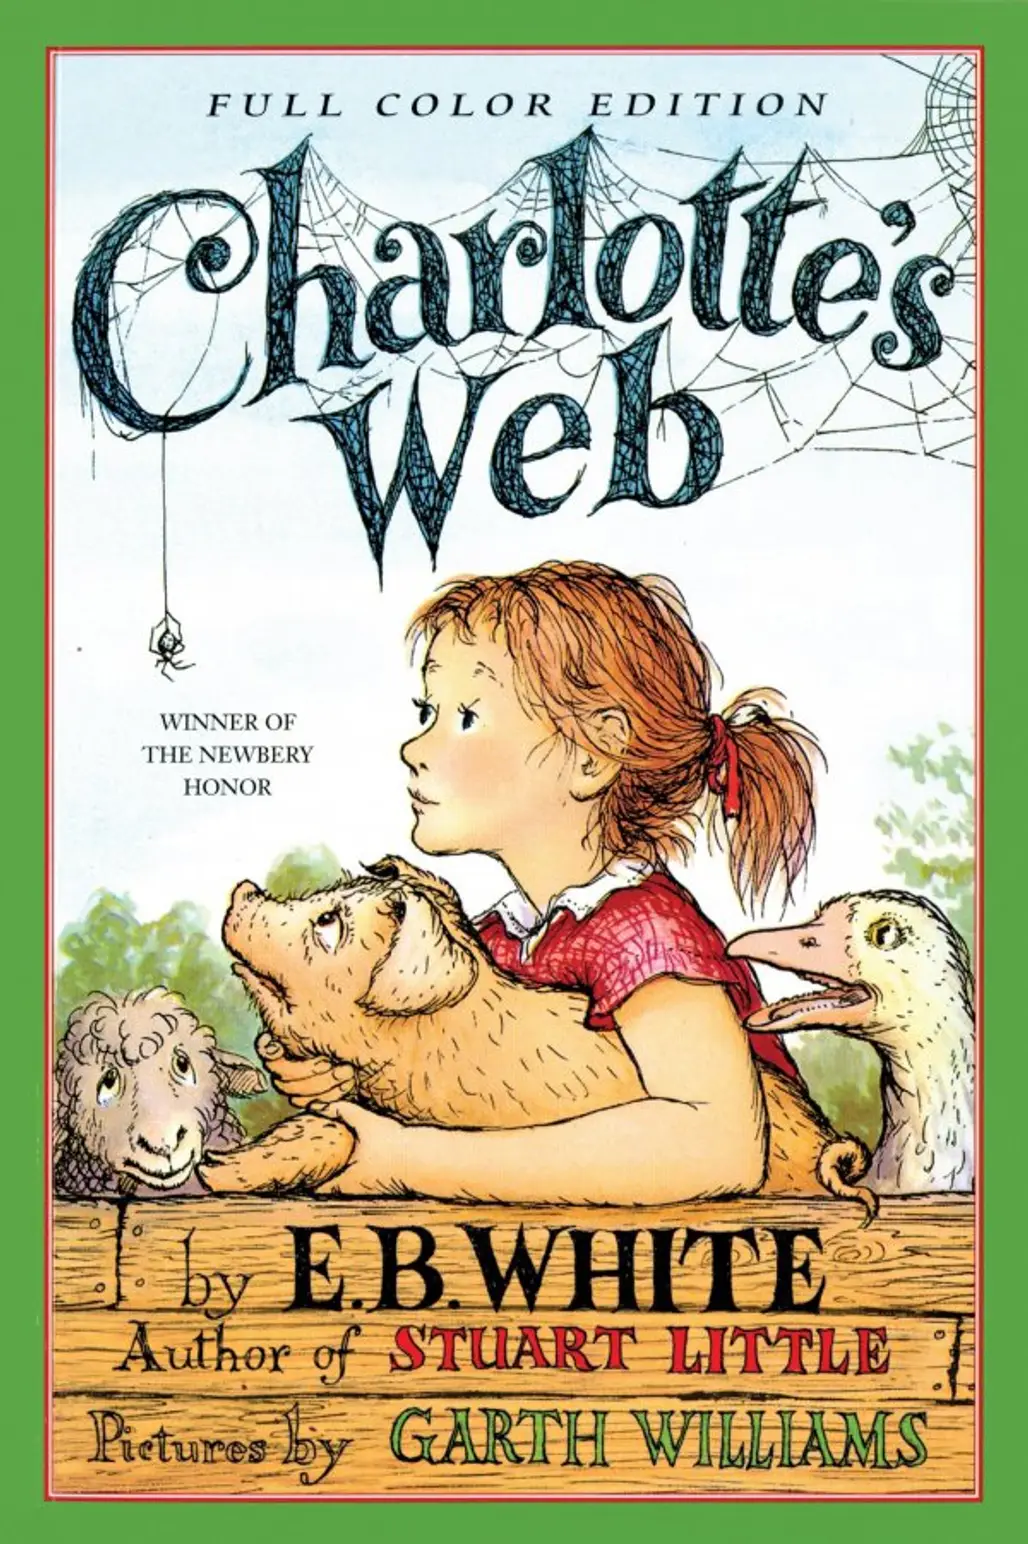 Charlotte's Web, E.B. White